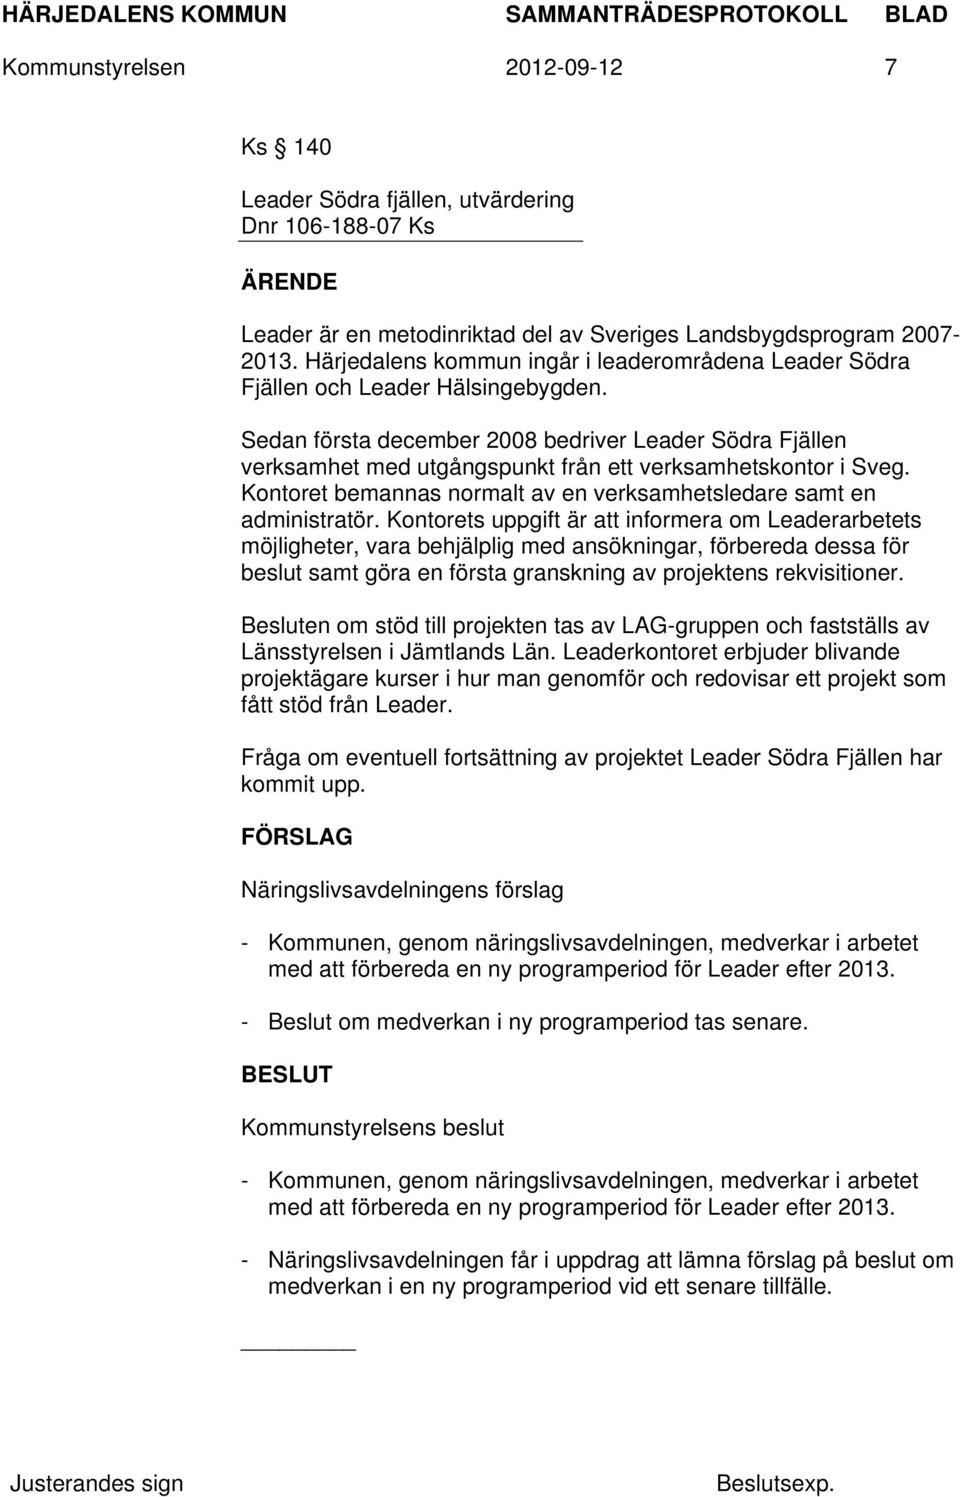 Sedan första december 2008 bedriver Leader Södra Fjällen verksamhet med utgångspunkt från ett verksamhetskontor i Sveg. Kontoret bemannas normalt av en verksamhetsledare samt en administratör.